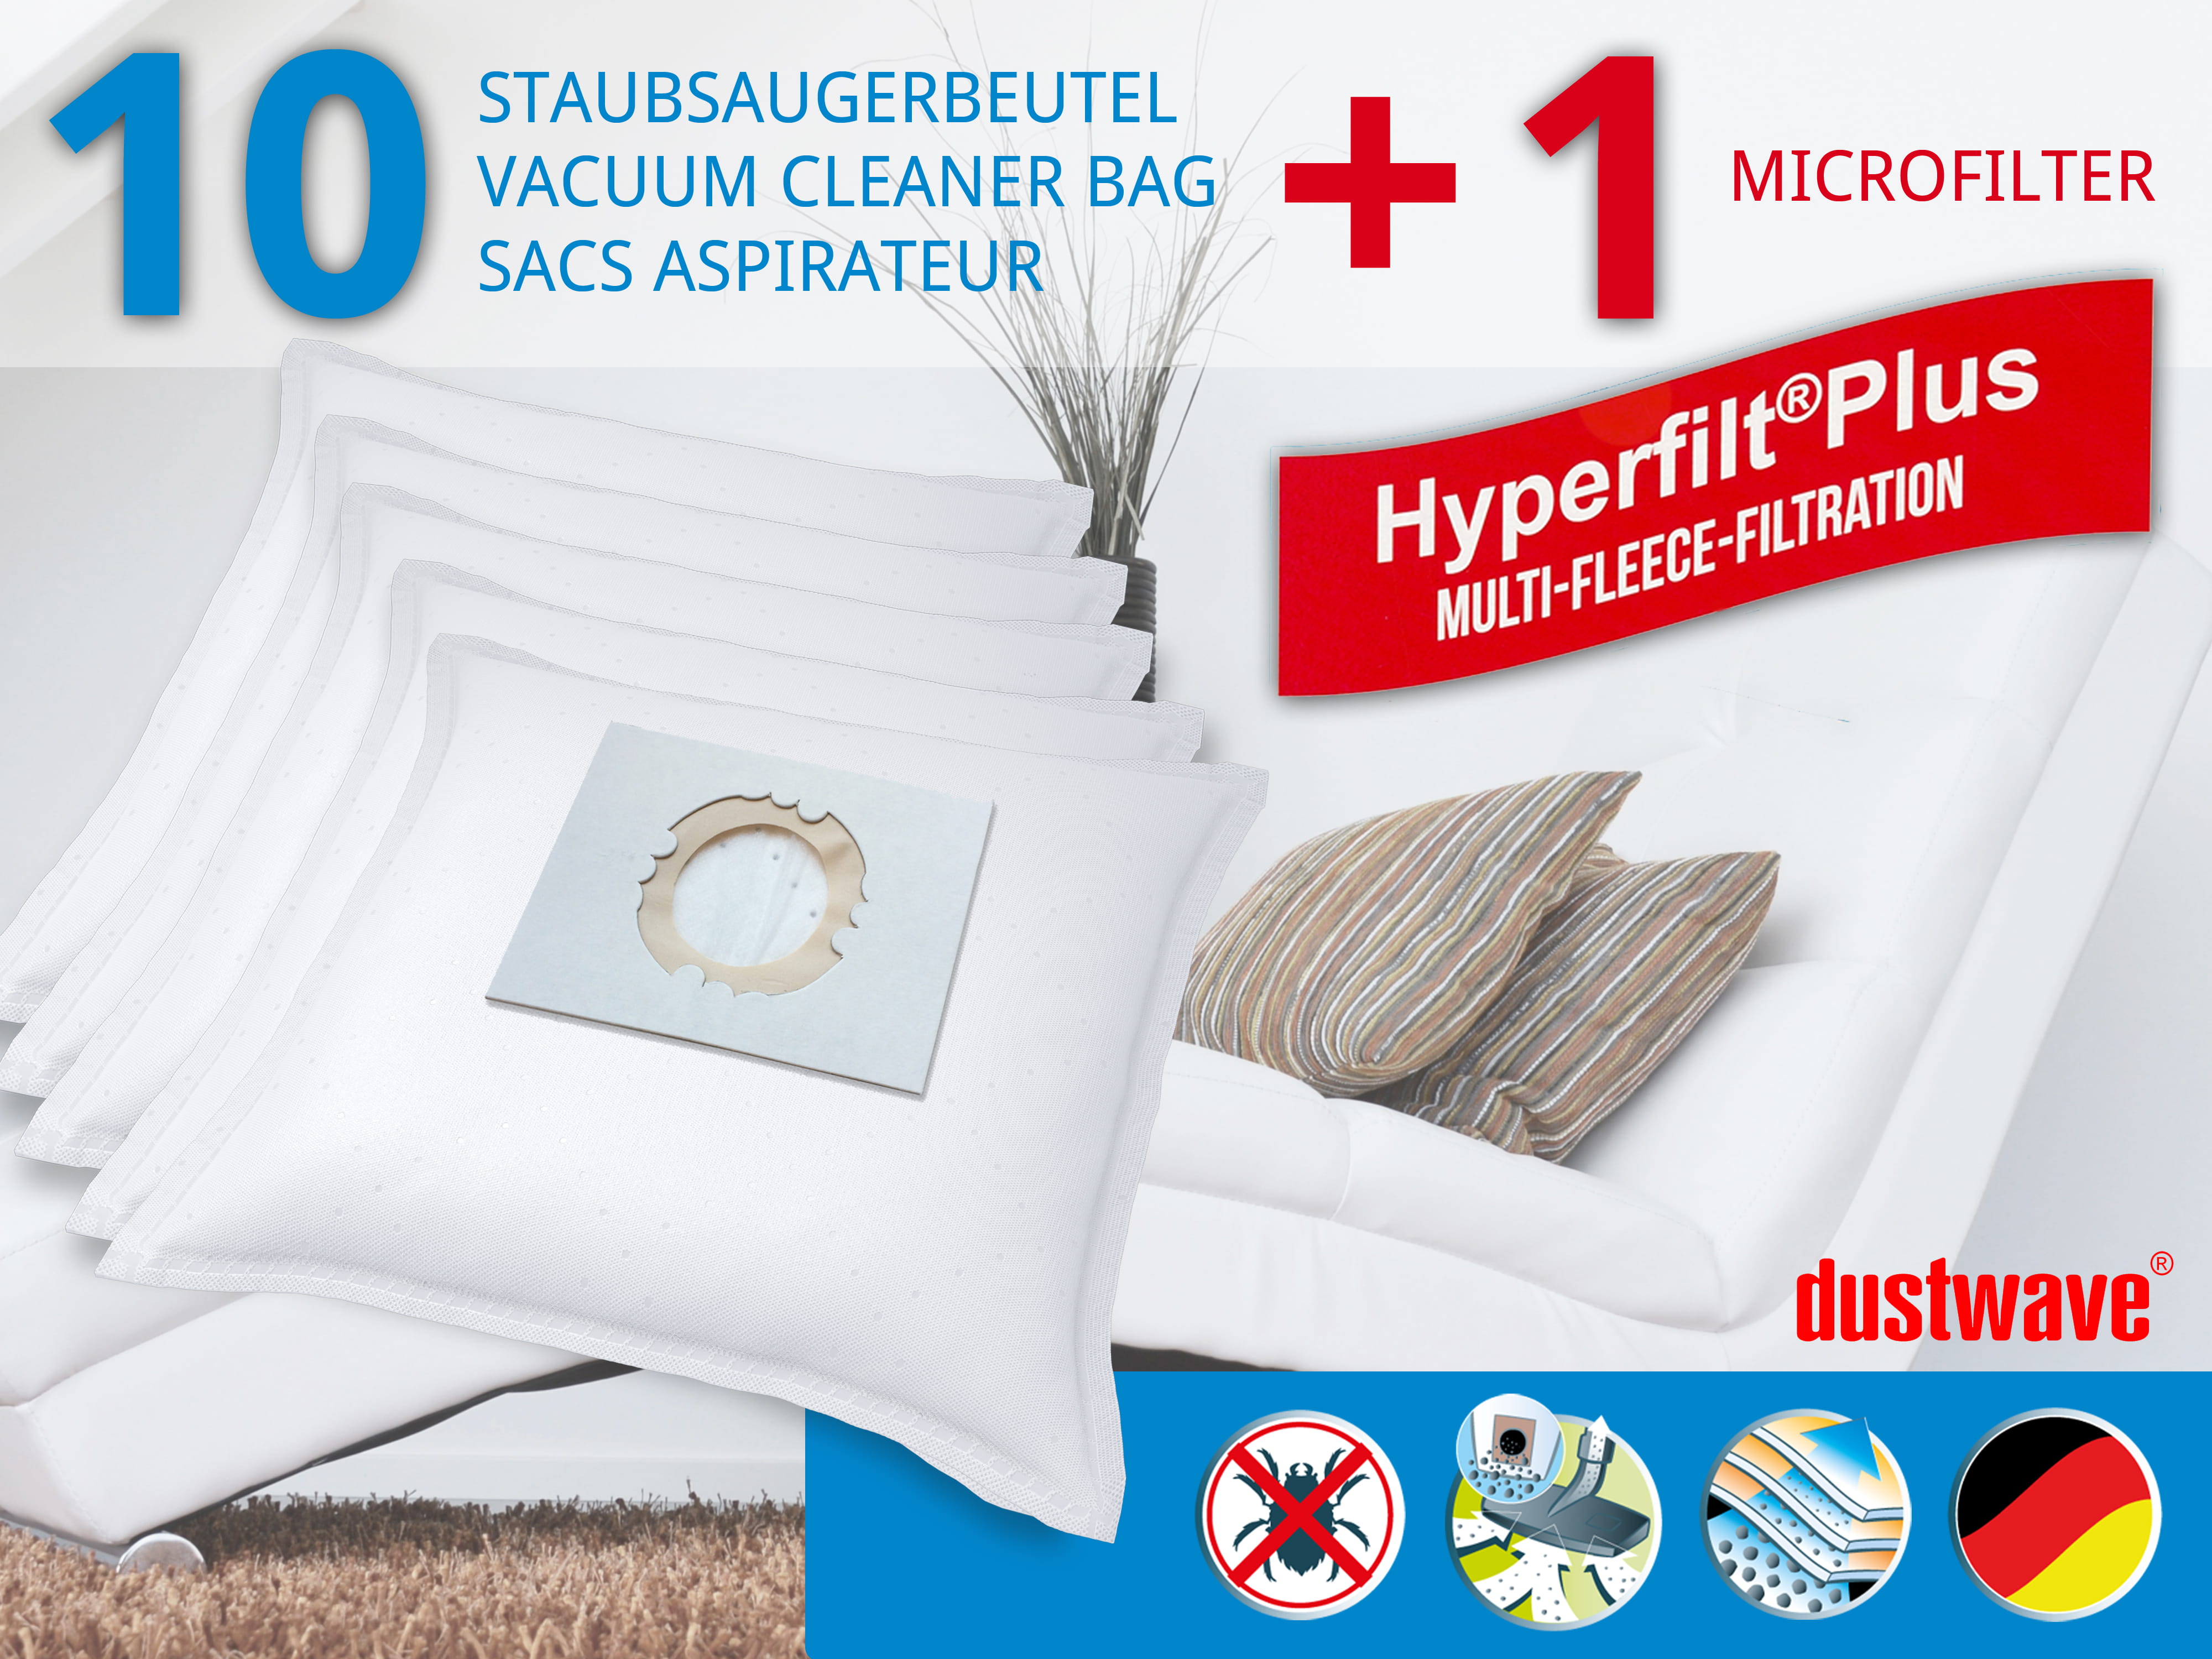 Dustwave® 10 Staubsaugerbeutel für Hoover S1640, 1649 - Dry - hocheffizient, mehrlagiges Mikrovlies mit Hygieneverschluss - Made in Germany